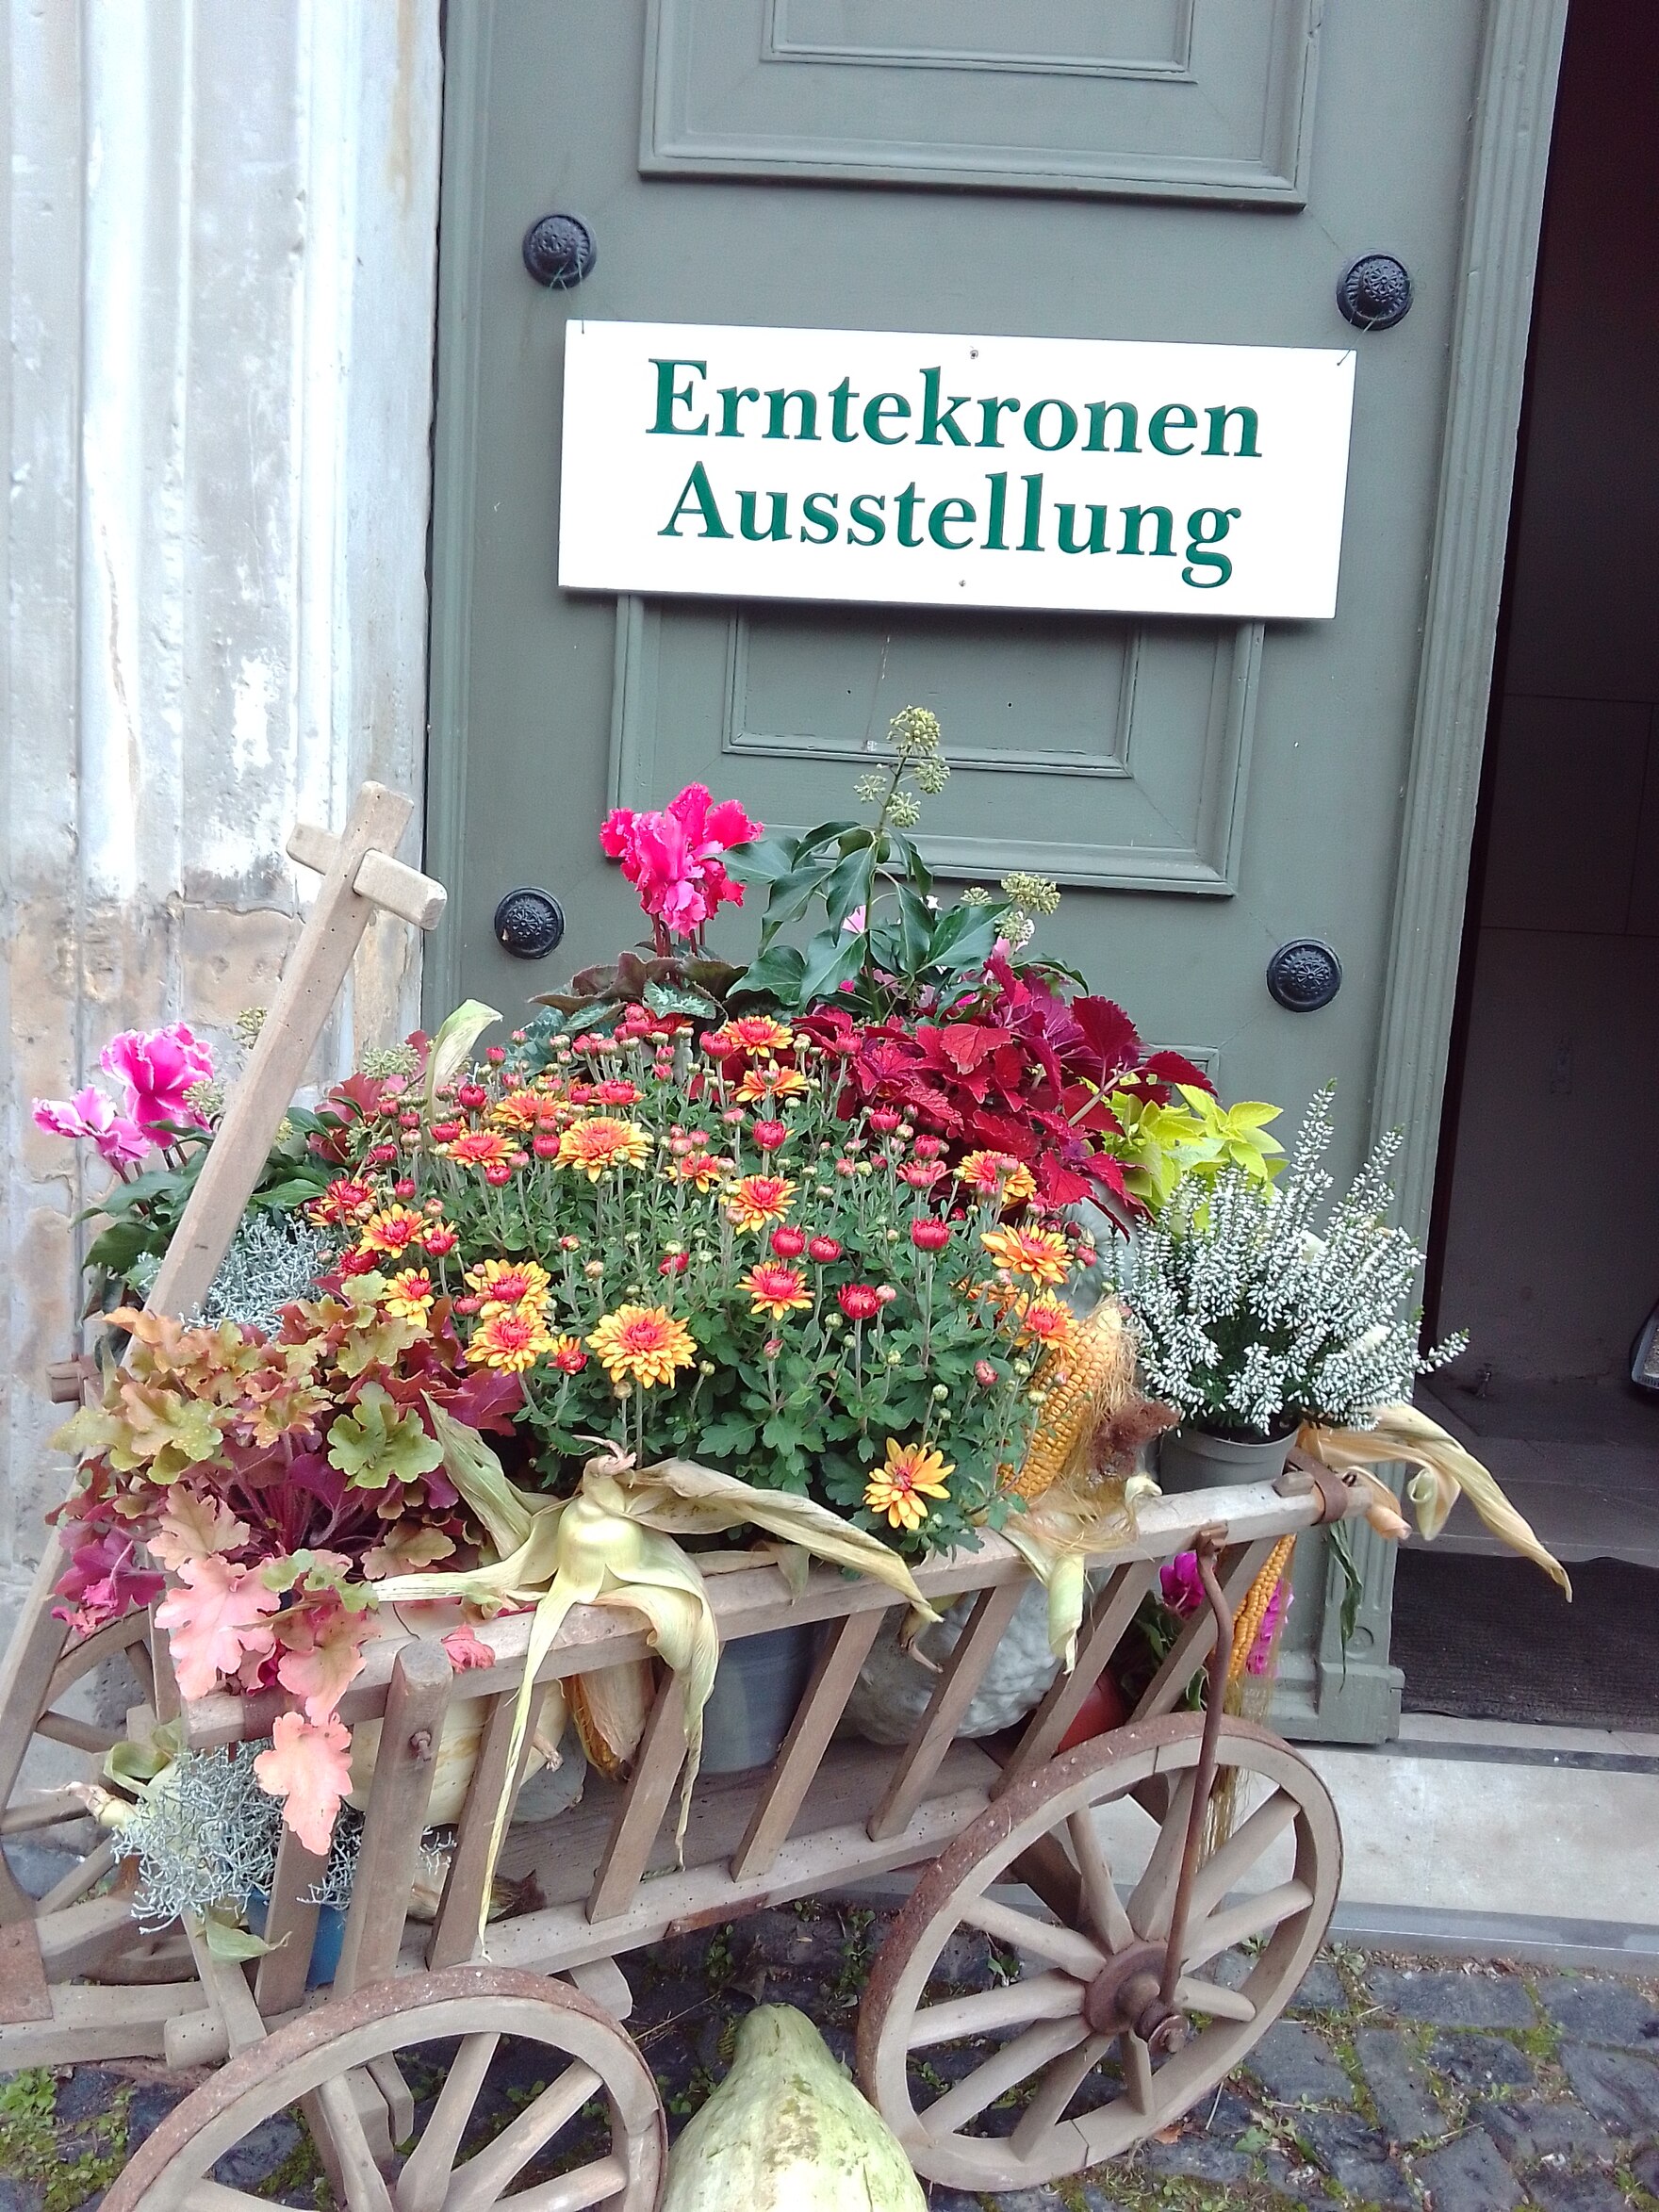 Vor der Tür kleiner Leiterwagen auf Holz bepackt mit Herbstblumen in Töpfen, an der grauen Tür ein Schild "Erntekronen Ausstellung"